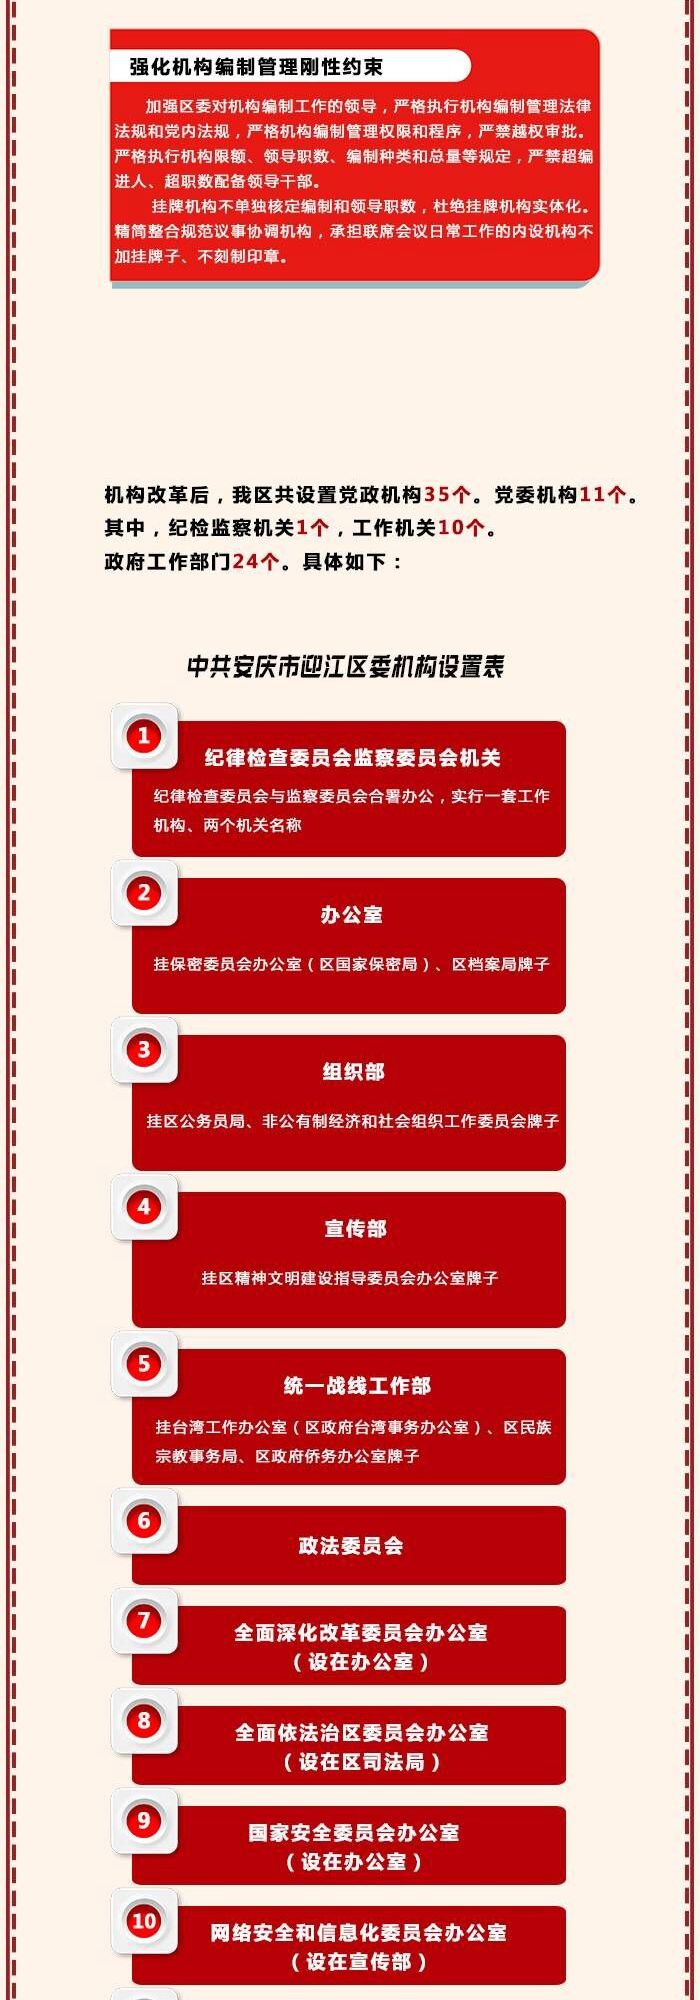 安庆迎江区机构改革方案公布(一图读懂)